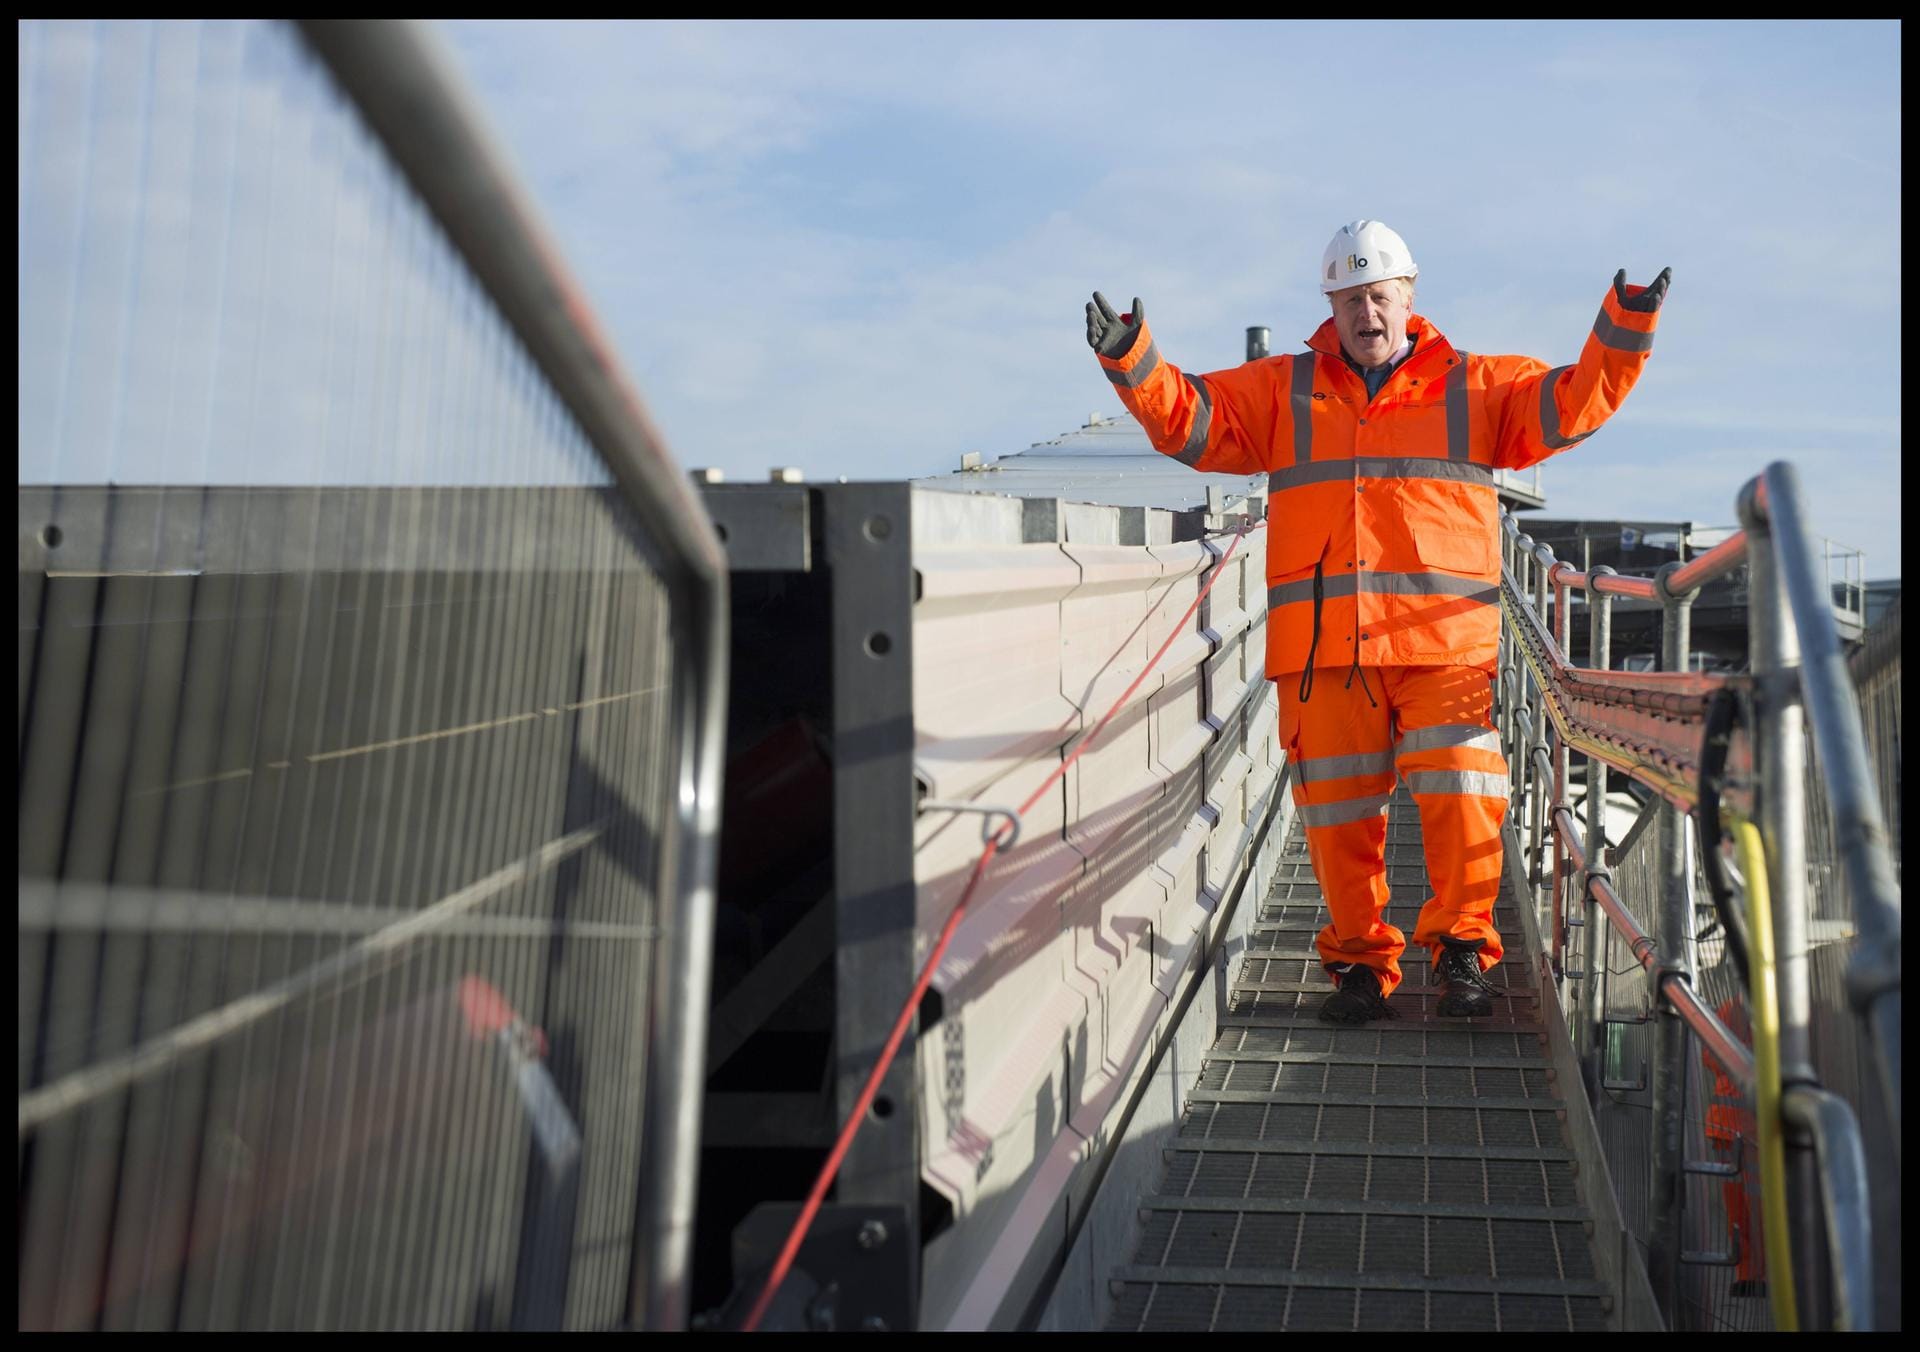 Klotzen statt kleckern: Boris Johnson besucht die Baustelle einer U-Bahn-Verlängerung in Nord-London.